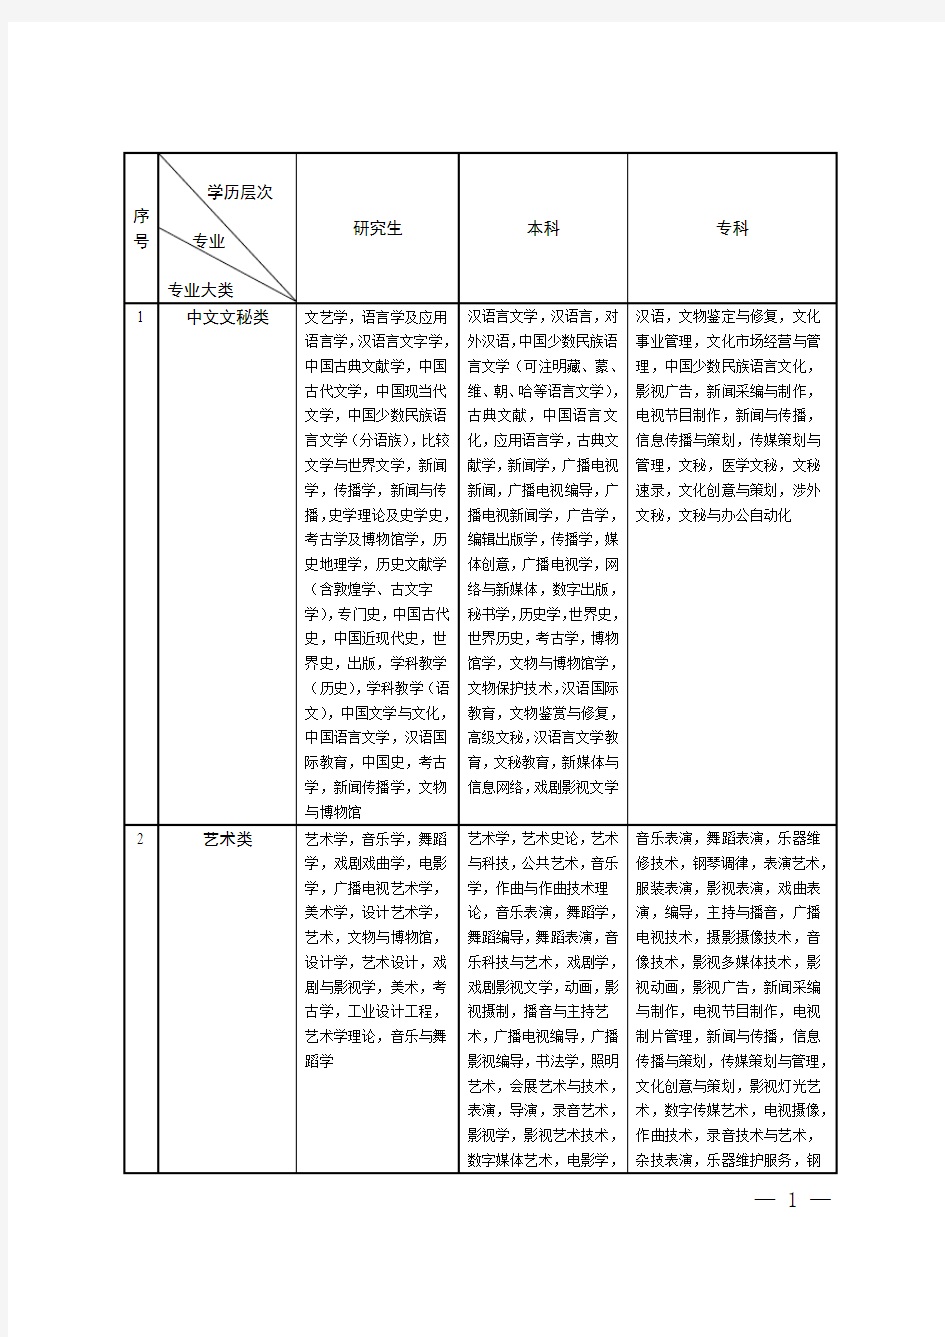 江苏省公务员考试录用专业参考目录(2018版)